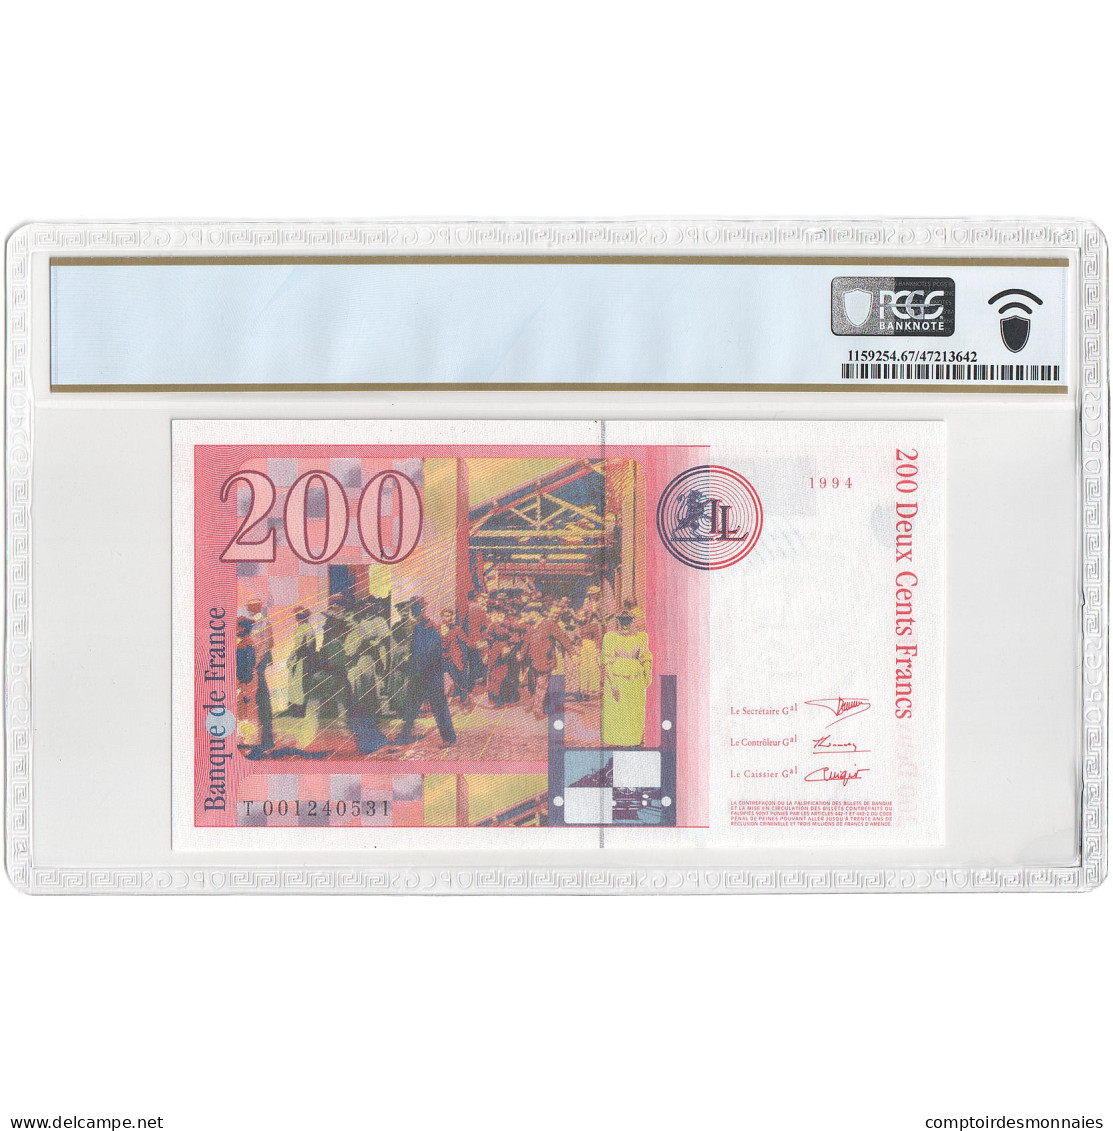 France, 200 Francs, Frères Lumière, T001240531, Unissued Bank Note, NEUF - Specimen